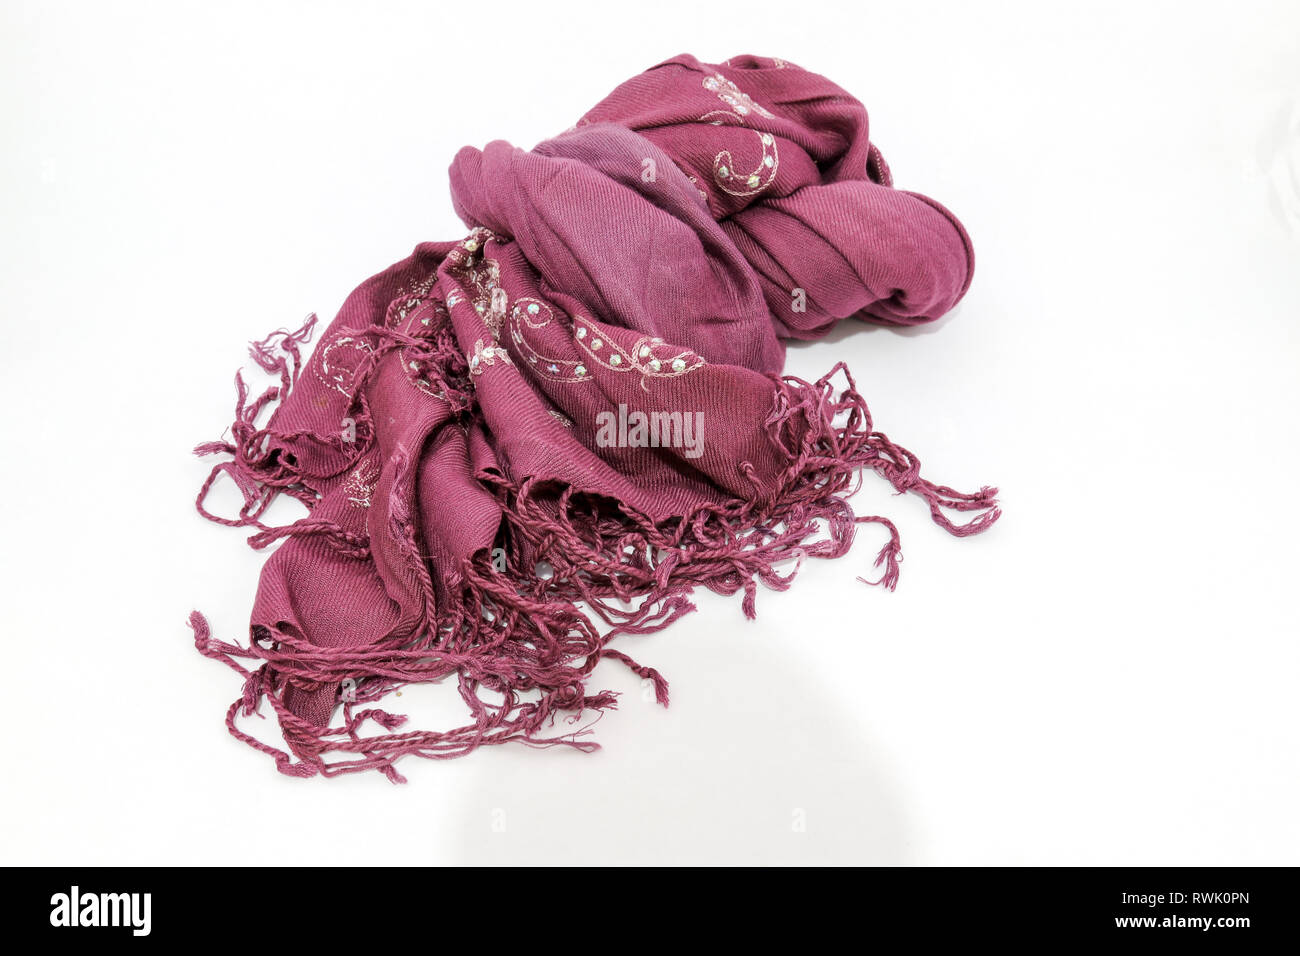 Foulard pour les femmes fashion, une longueur ou carrés de tissu porté autour du cou ou de la tête. Banque D'Images